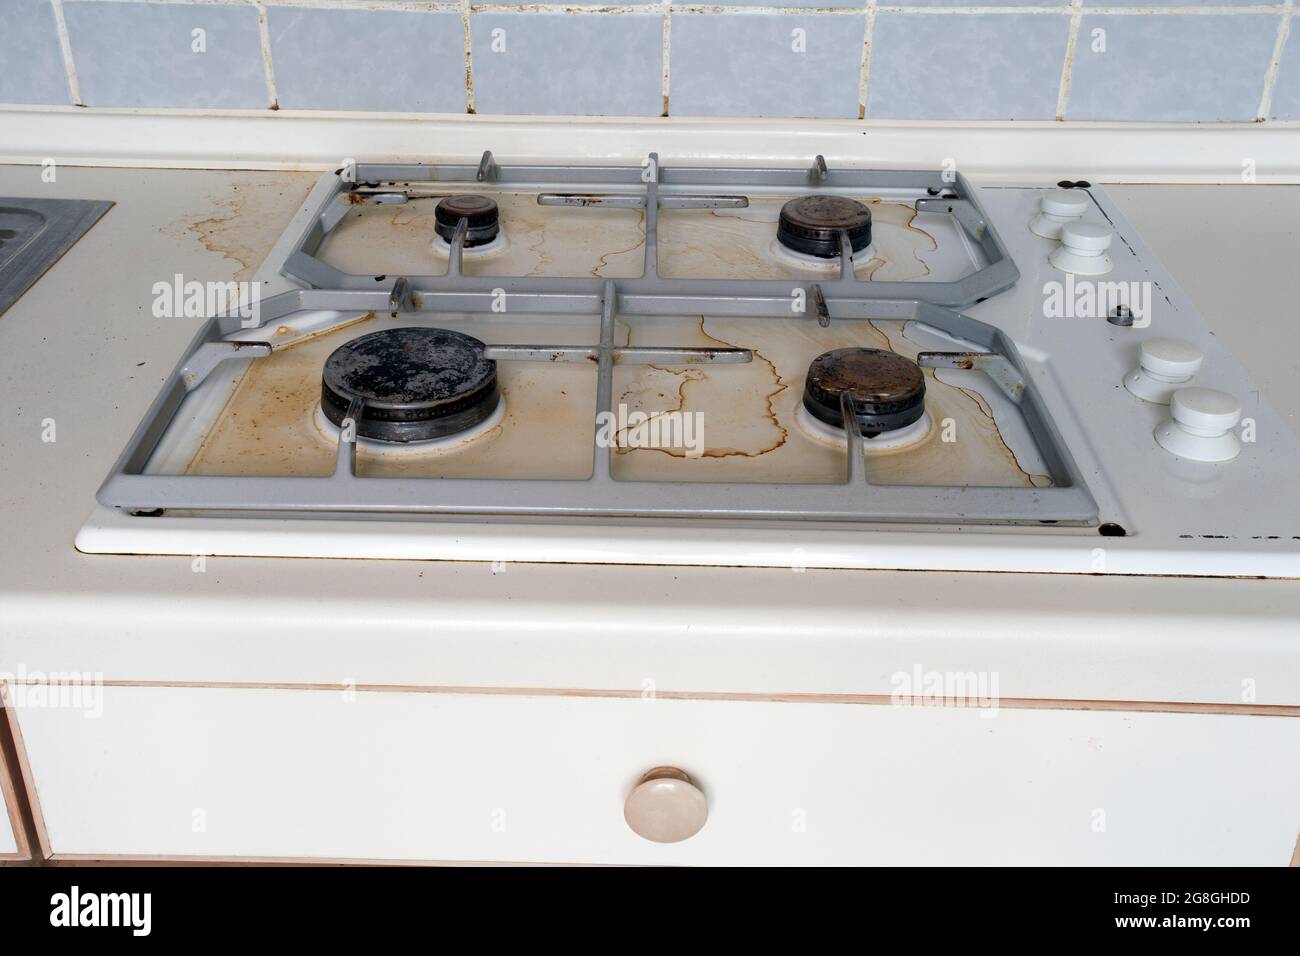 La stufa a gas sporca che l'olio di cottura macchiava sulla stufa a gas in  cucina. Una cucina sporca e non pulita usata per cucinare l'alimento e  preparare i pasti, ha bisogno